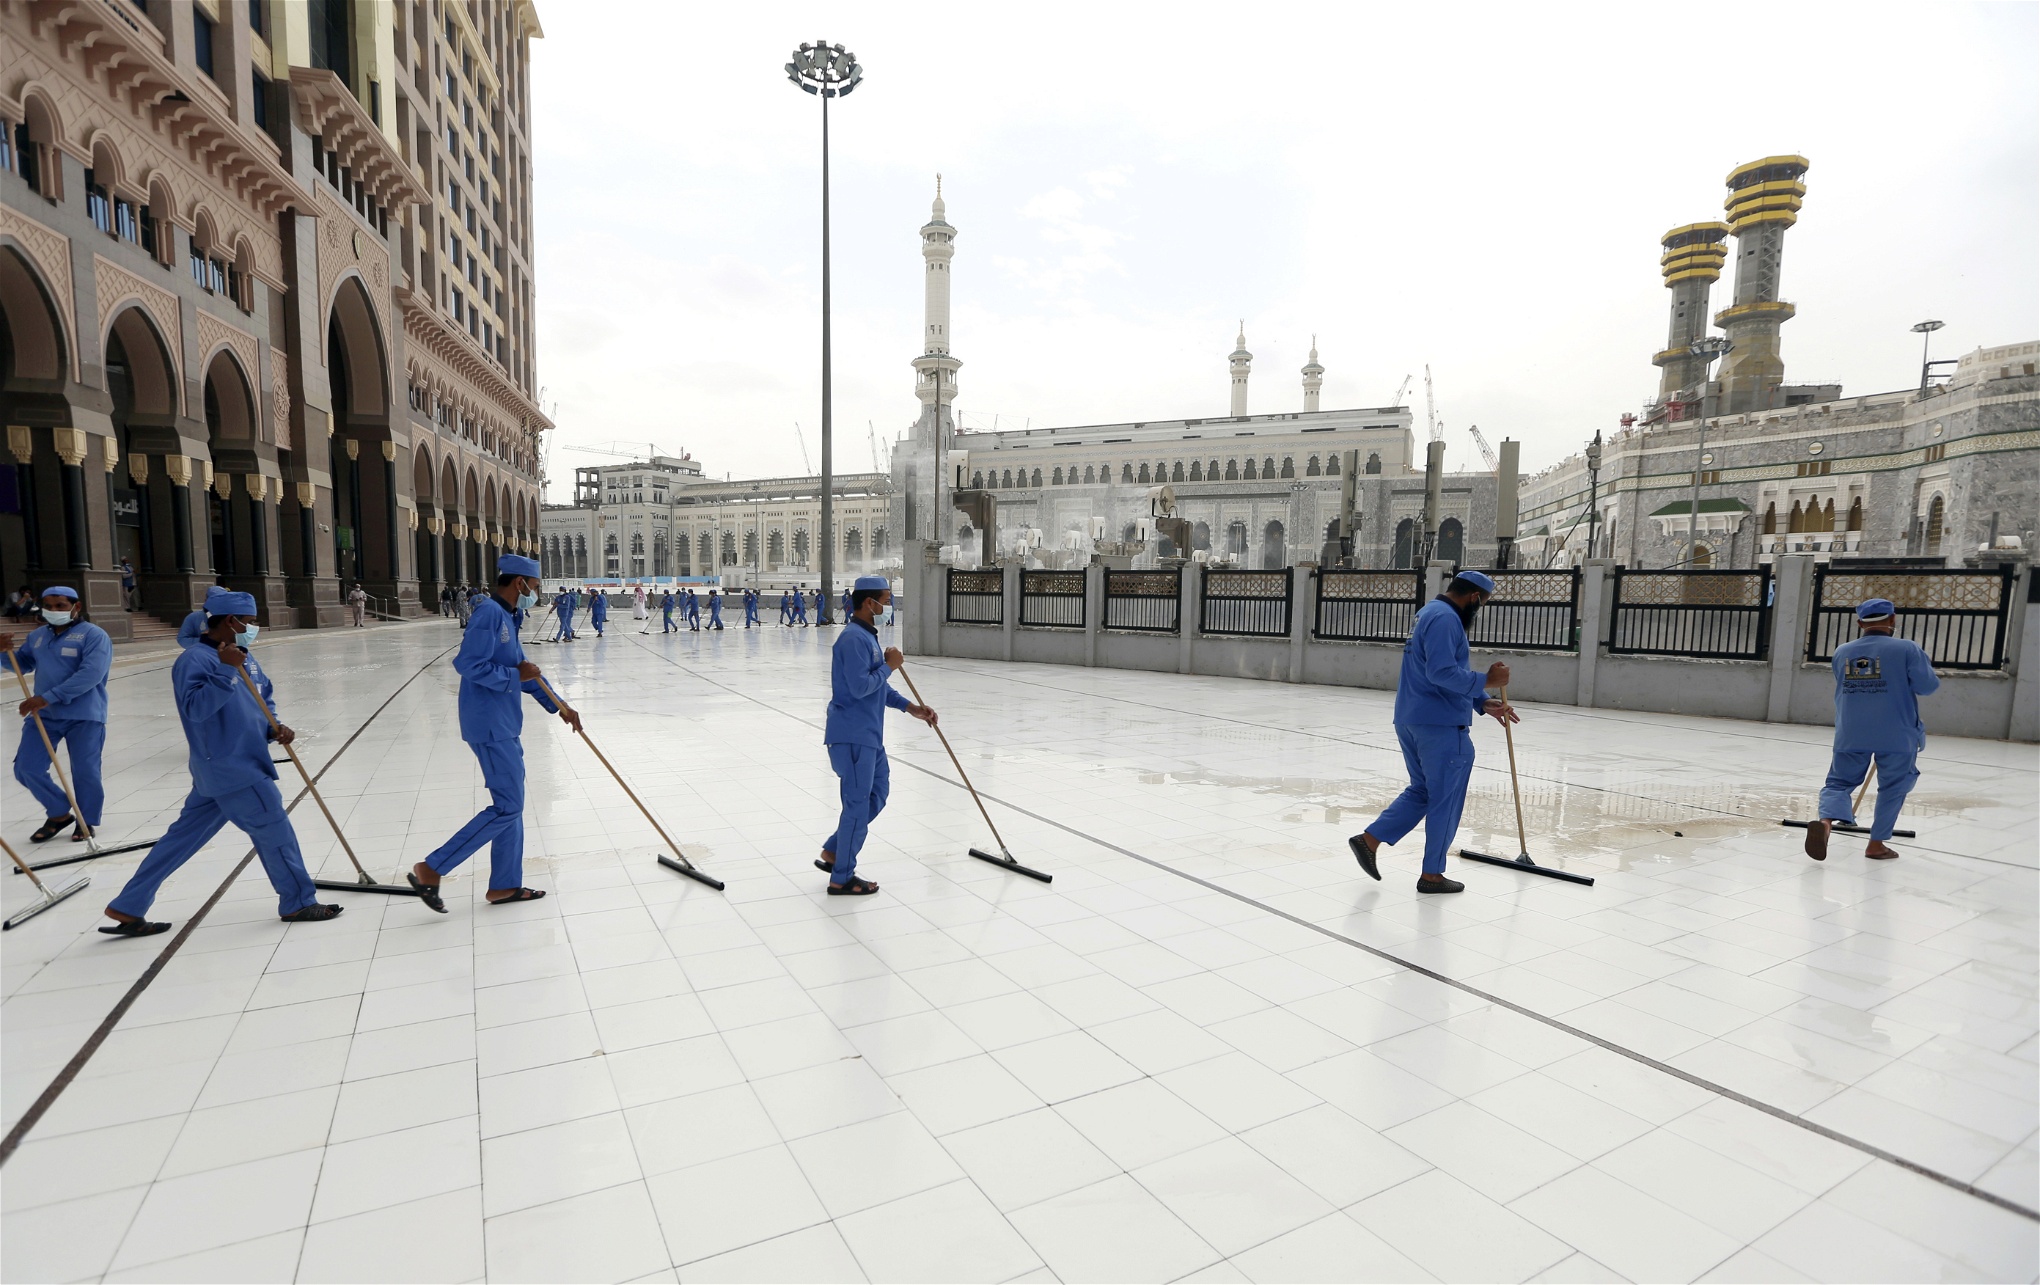 Städare i blåa skyddskläder svabbar golvet utanför en moské.